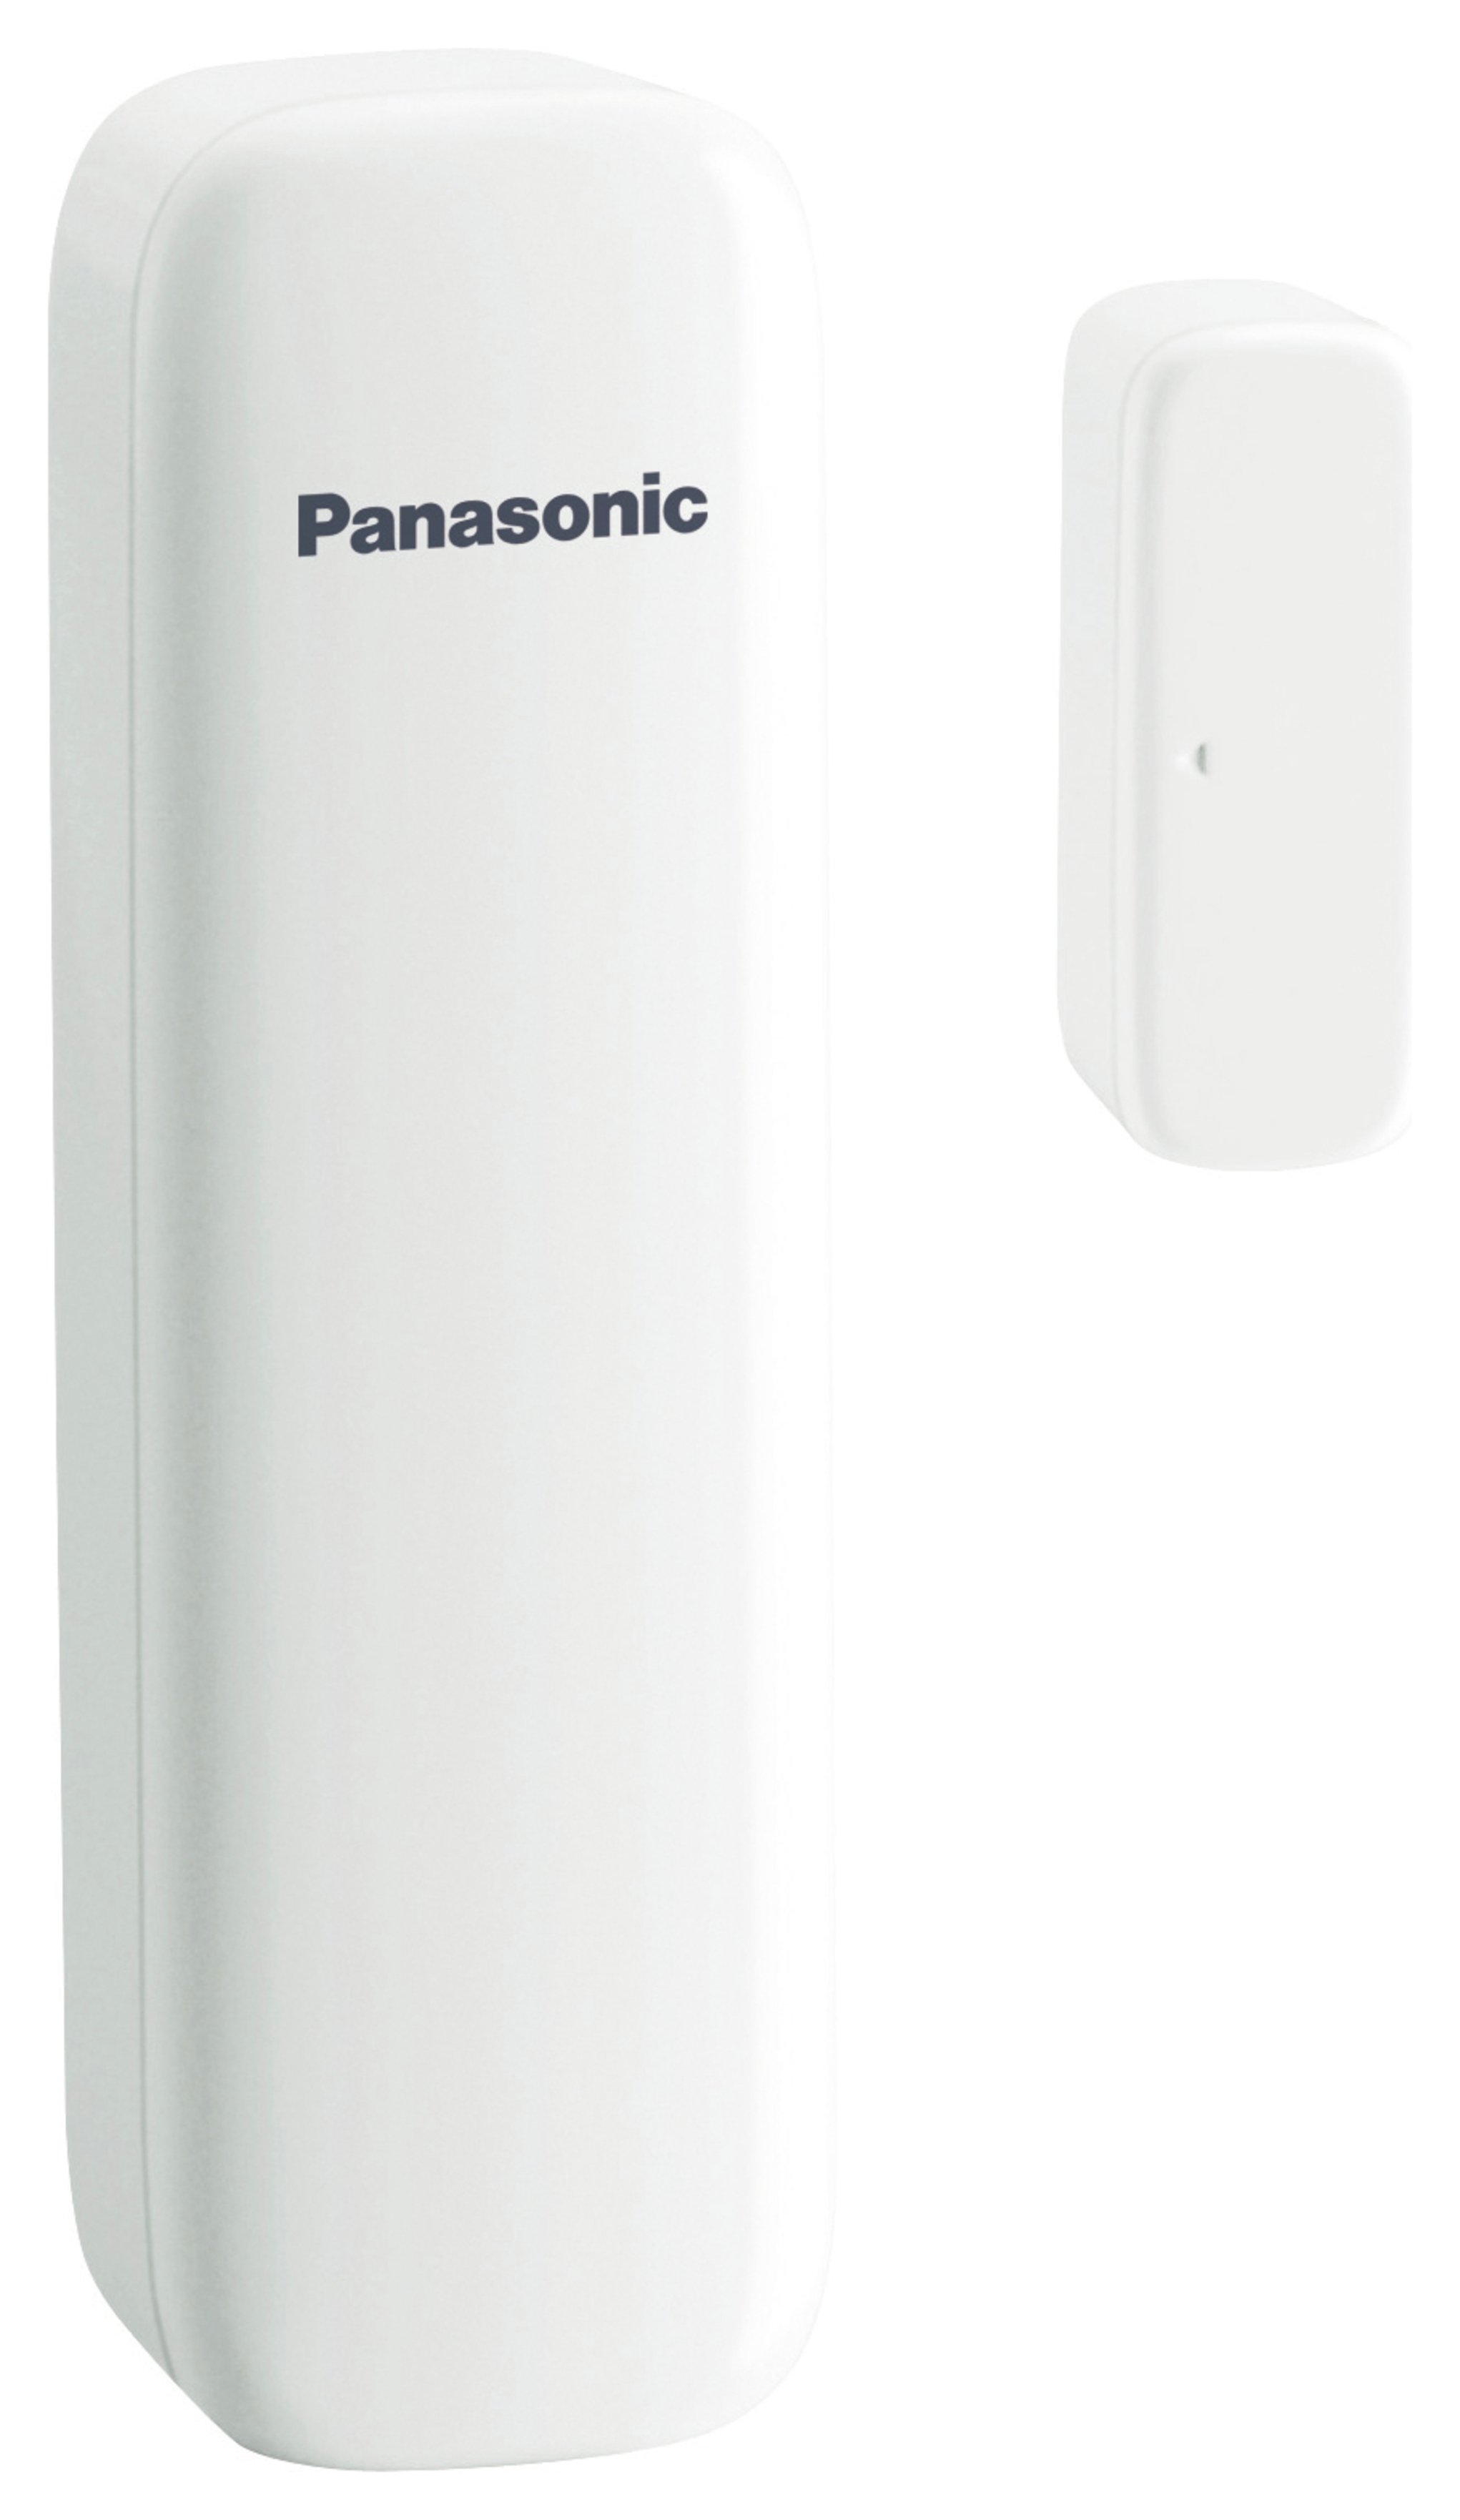 Panasonic Smart Home Door/Window Sensor.